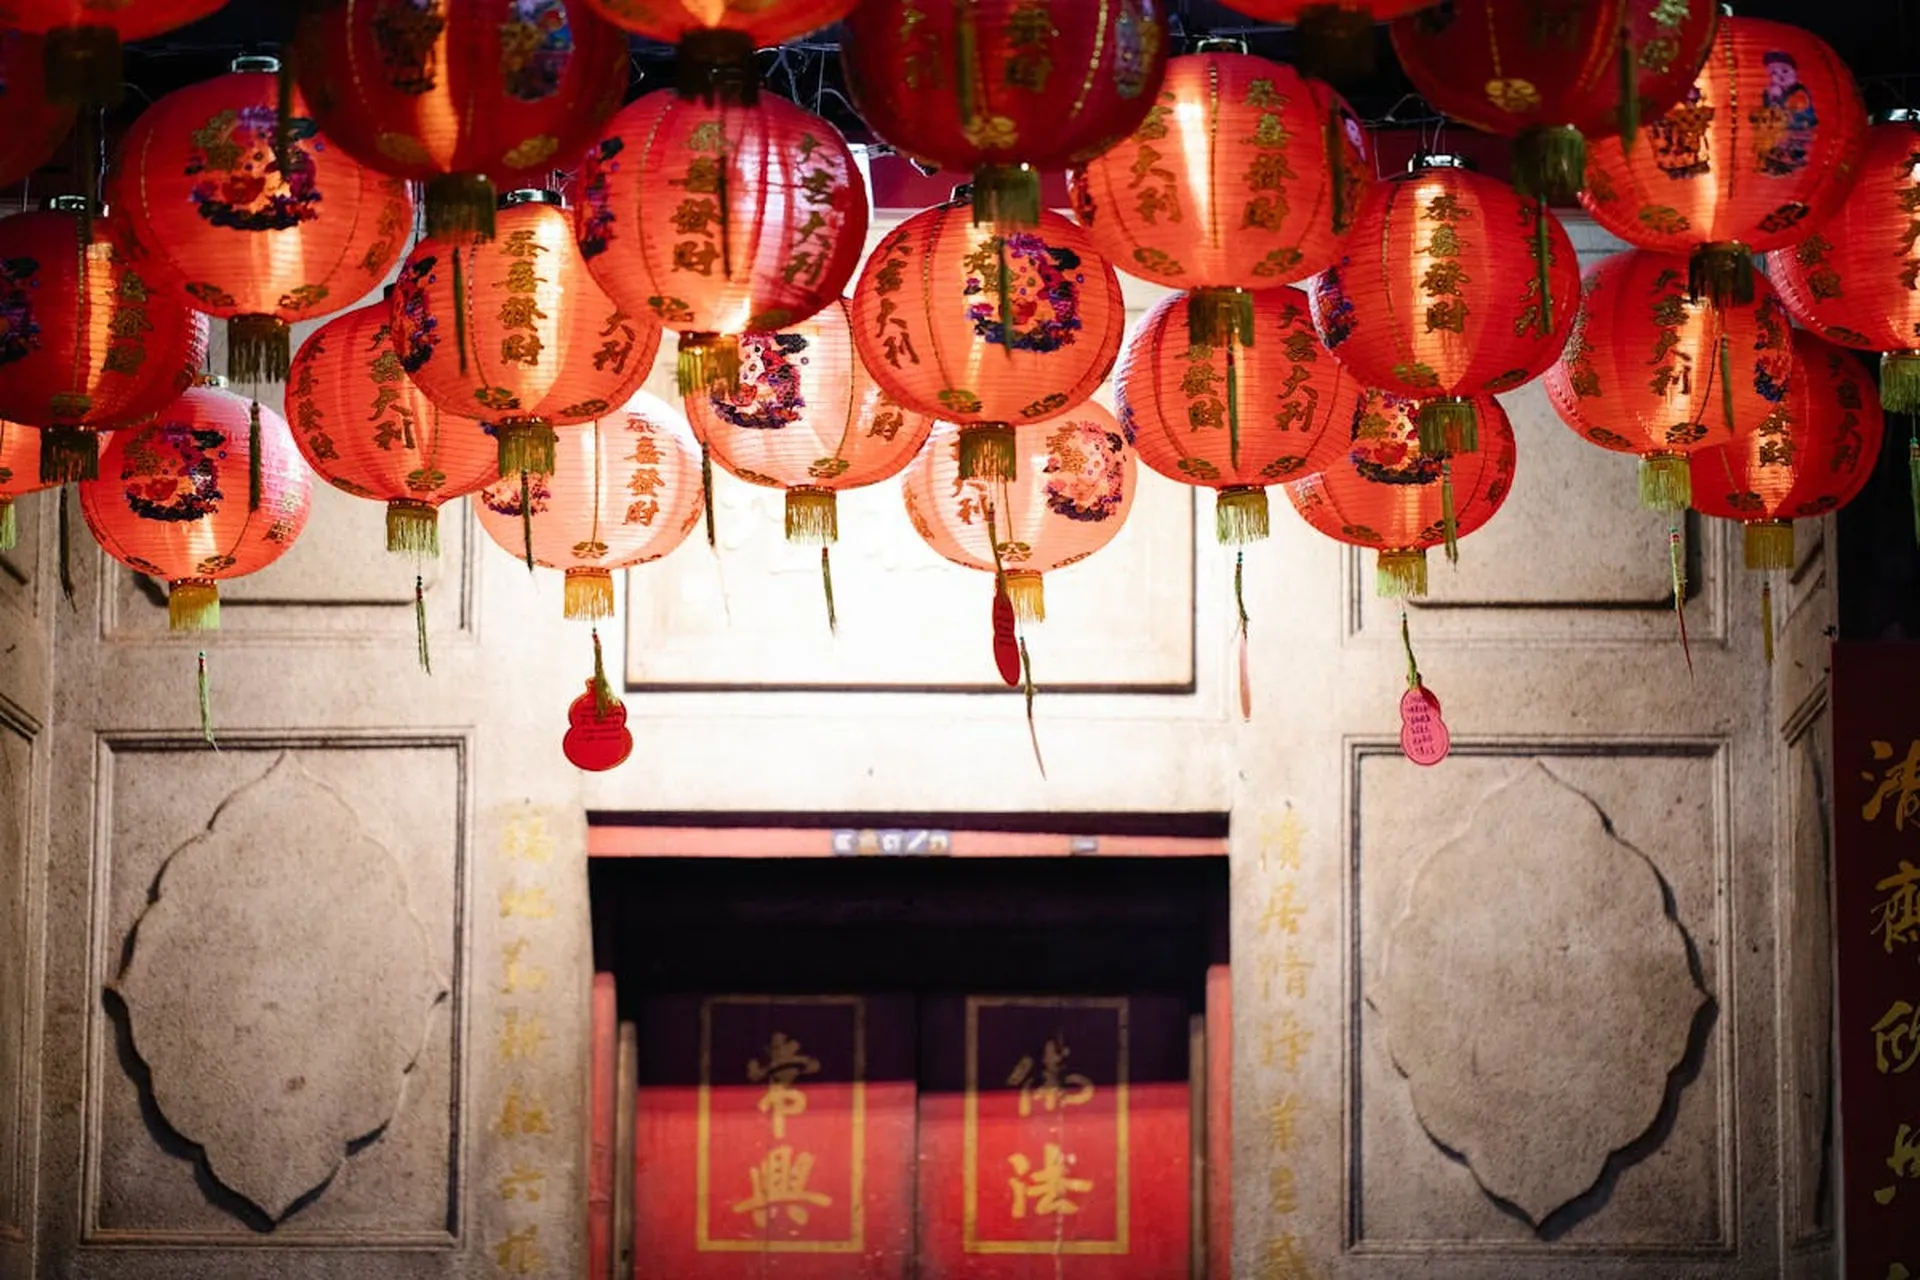 Explore Chinatown 